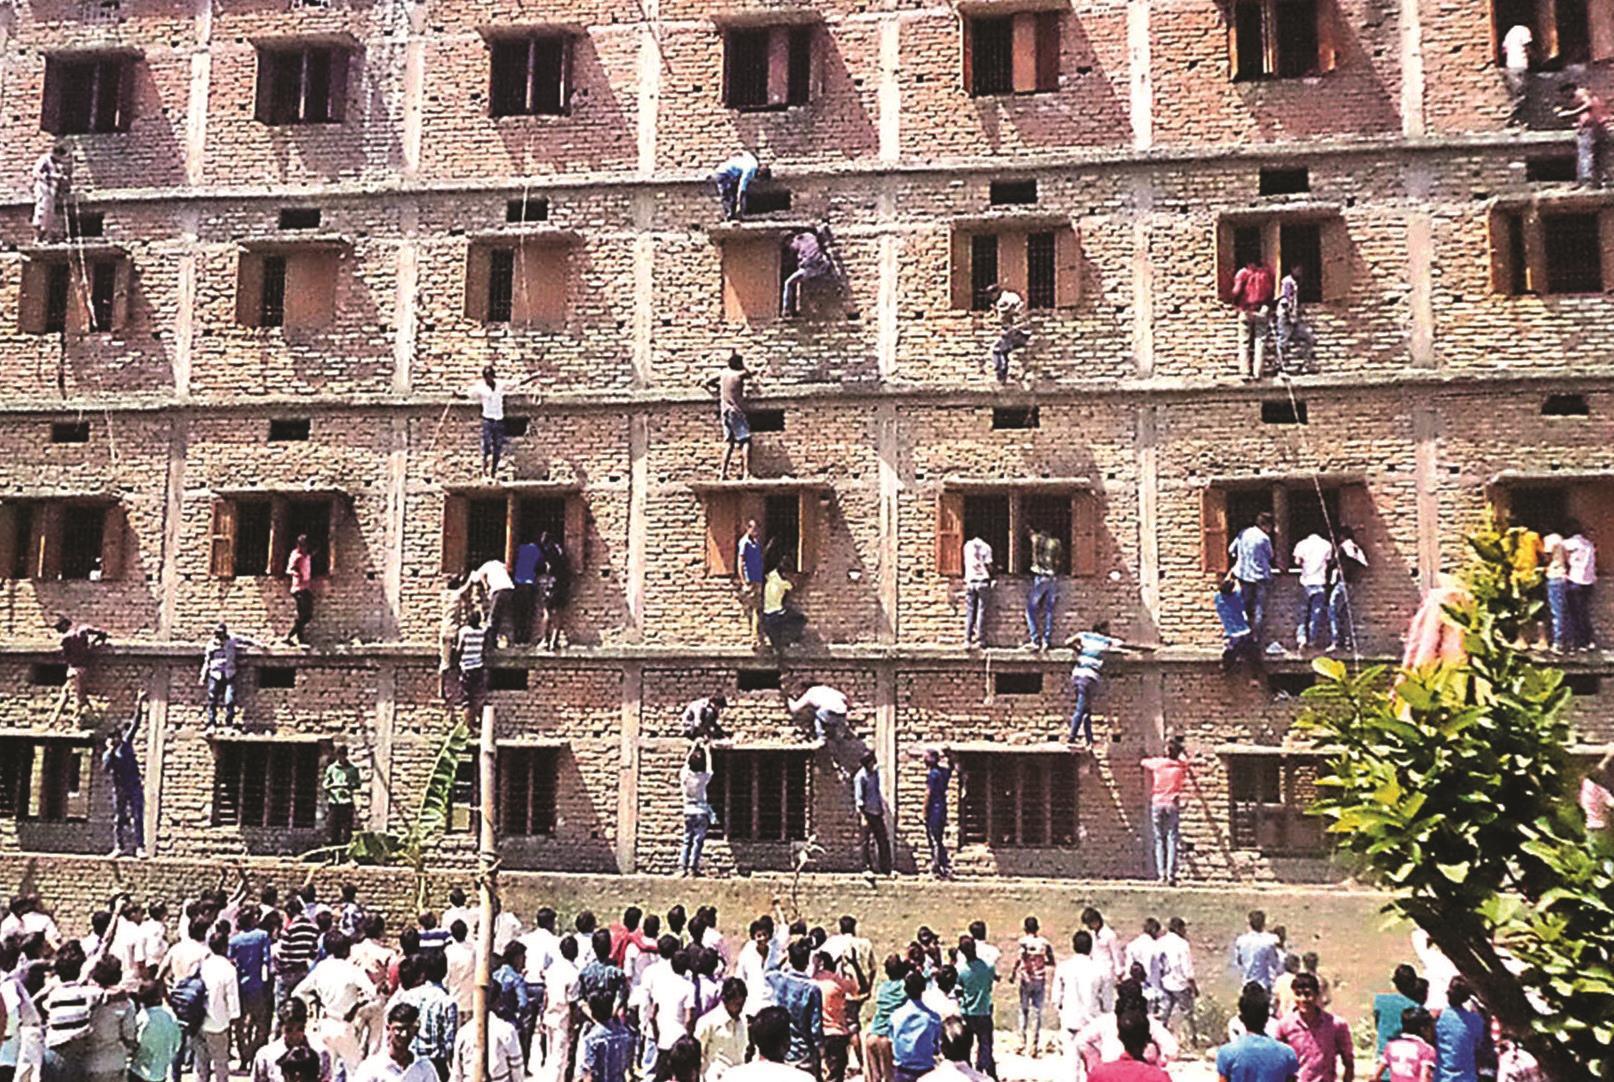 134780_Bihar-exam-building_GettyImages-467607846_creditSTRDEL_AFP_Getty-Images.jpg